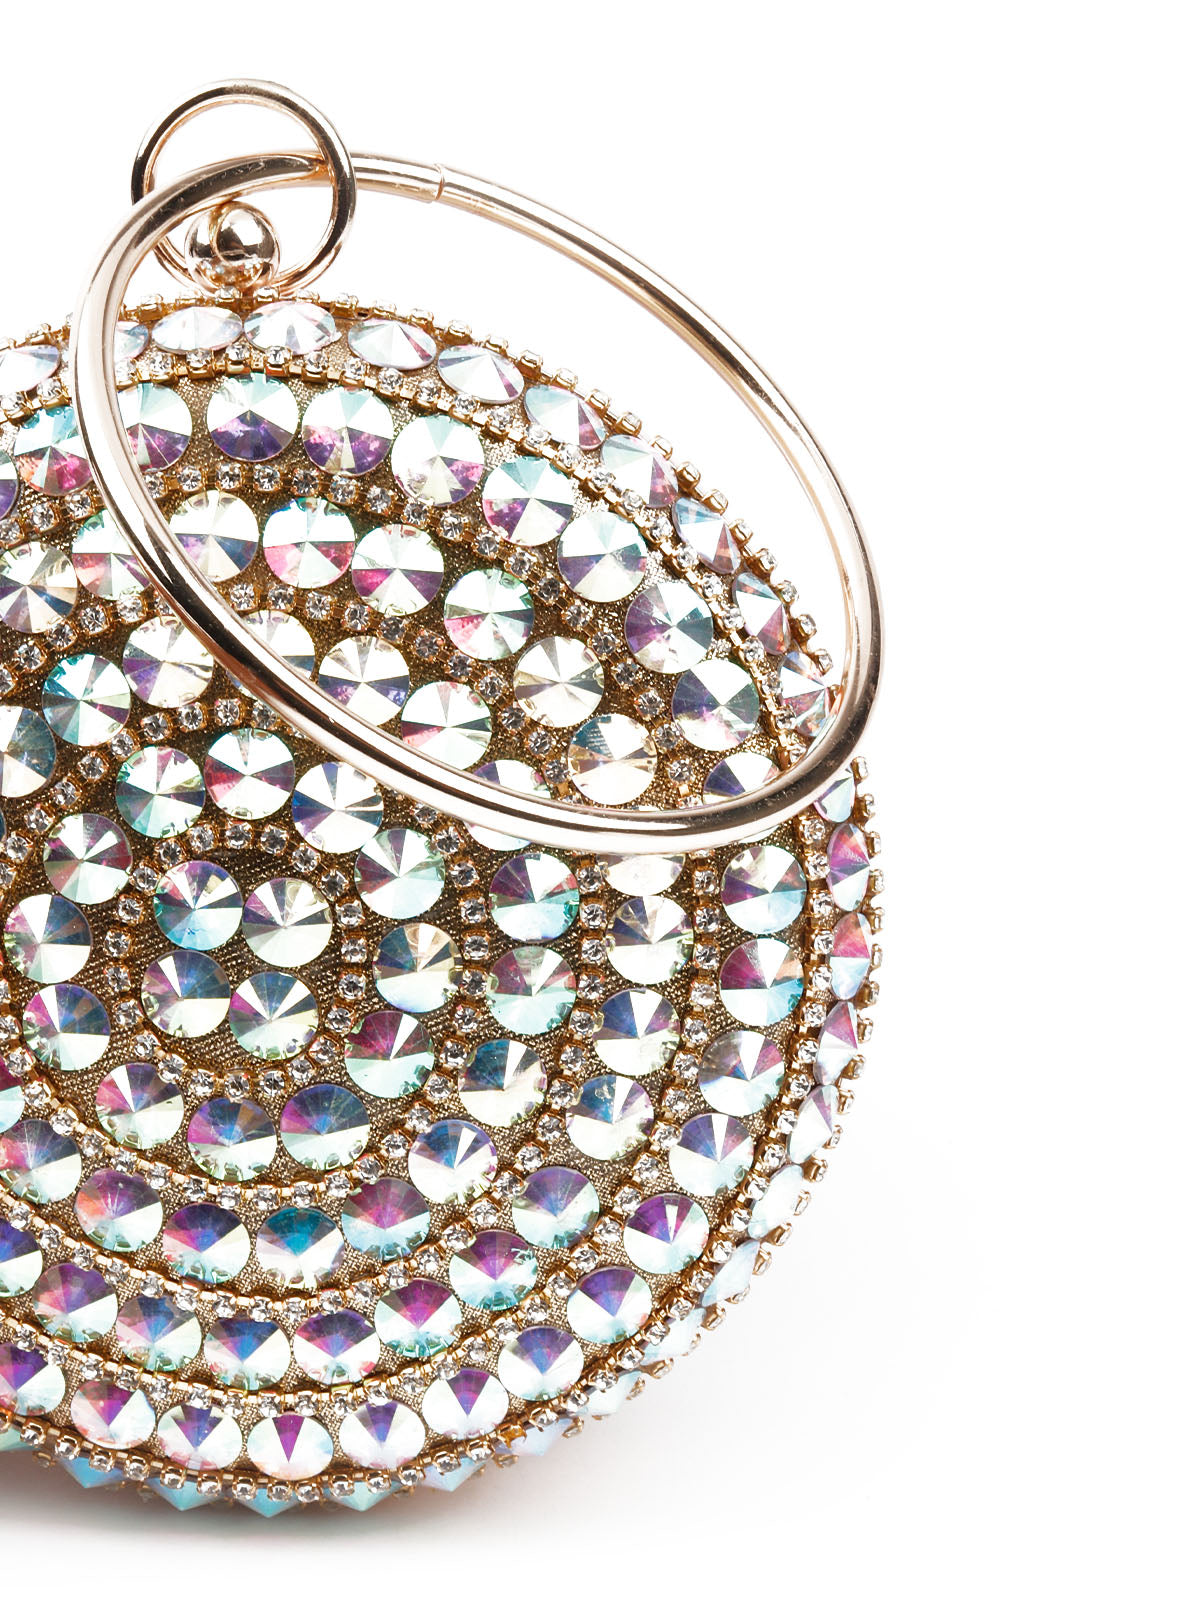 Evening luxury crystal stone Bridal clutch purse bag | eBay